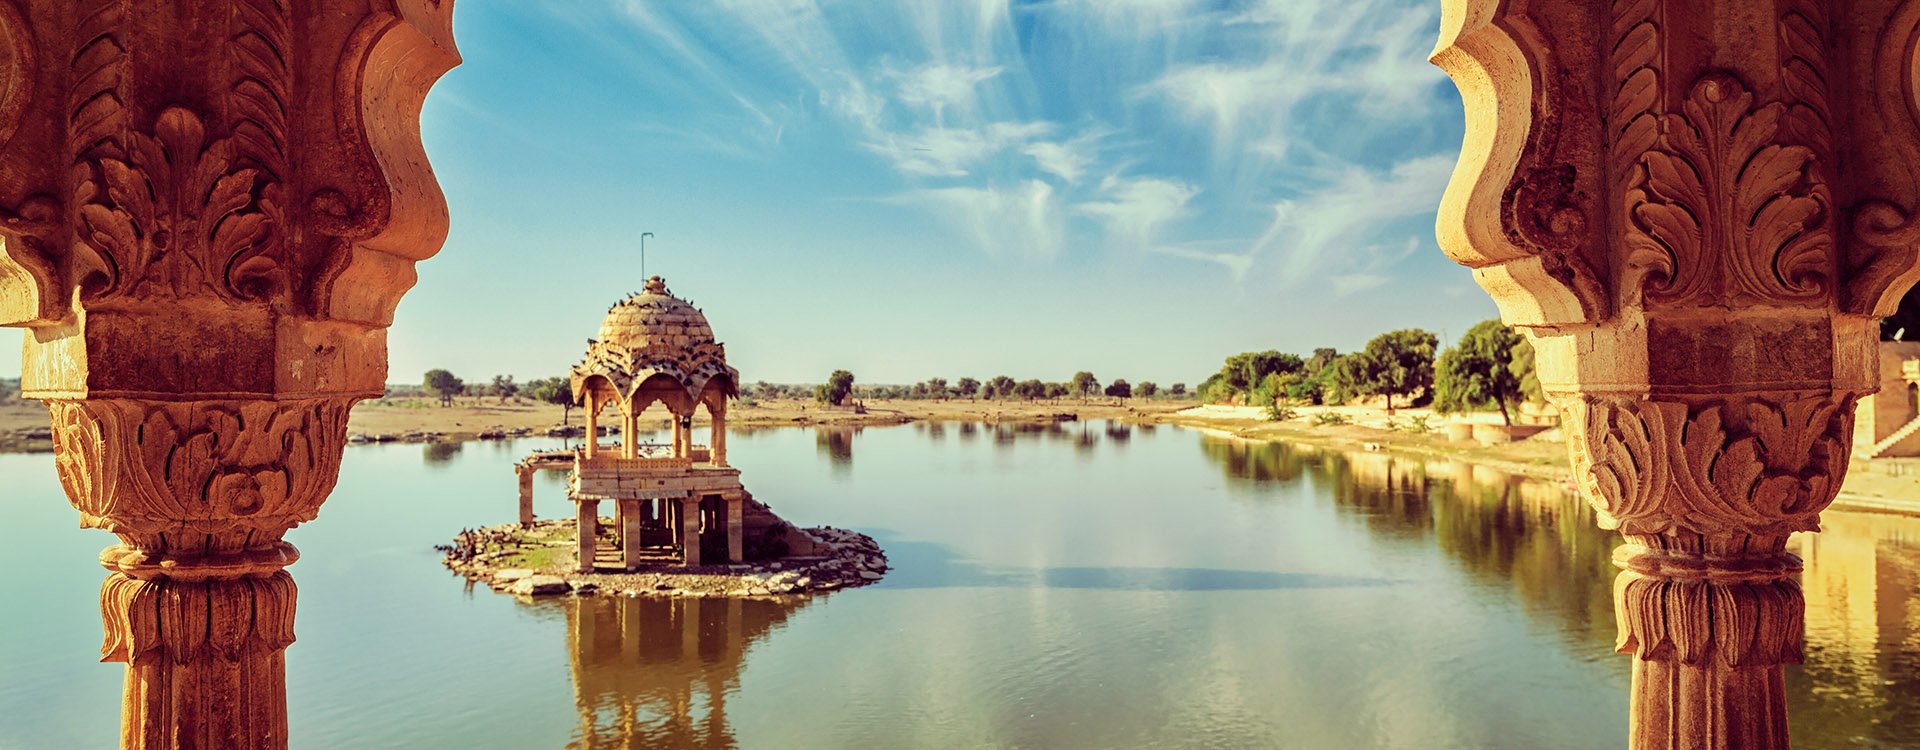 Indian landmark Gadi Sagar - artificial lake view through arch. Jaisalmer, Rajasthan, India